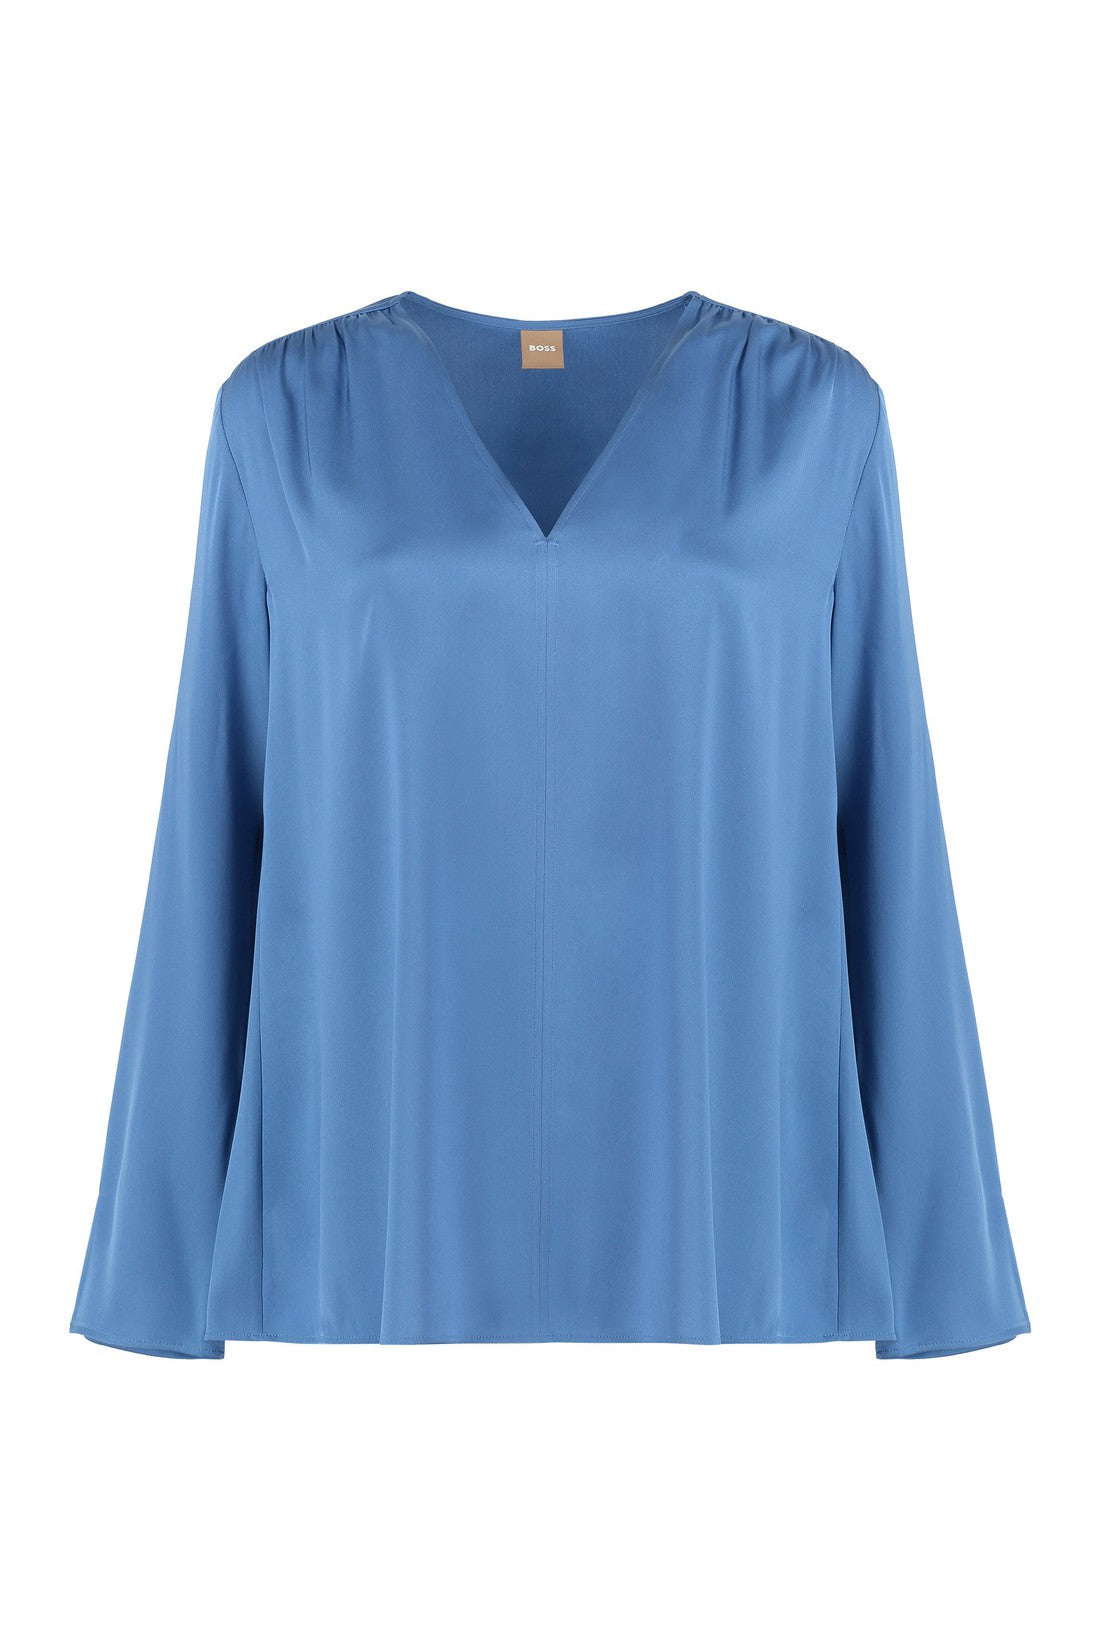 BOSS-OUTLET-SALE-Silk blouse-ARCHIVIST